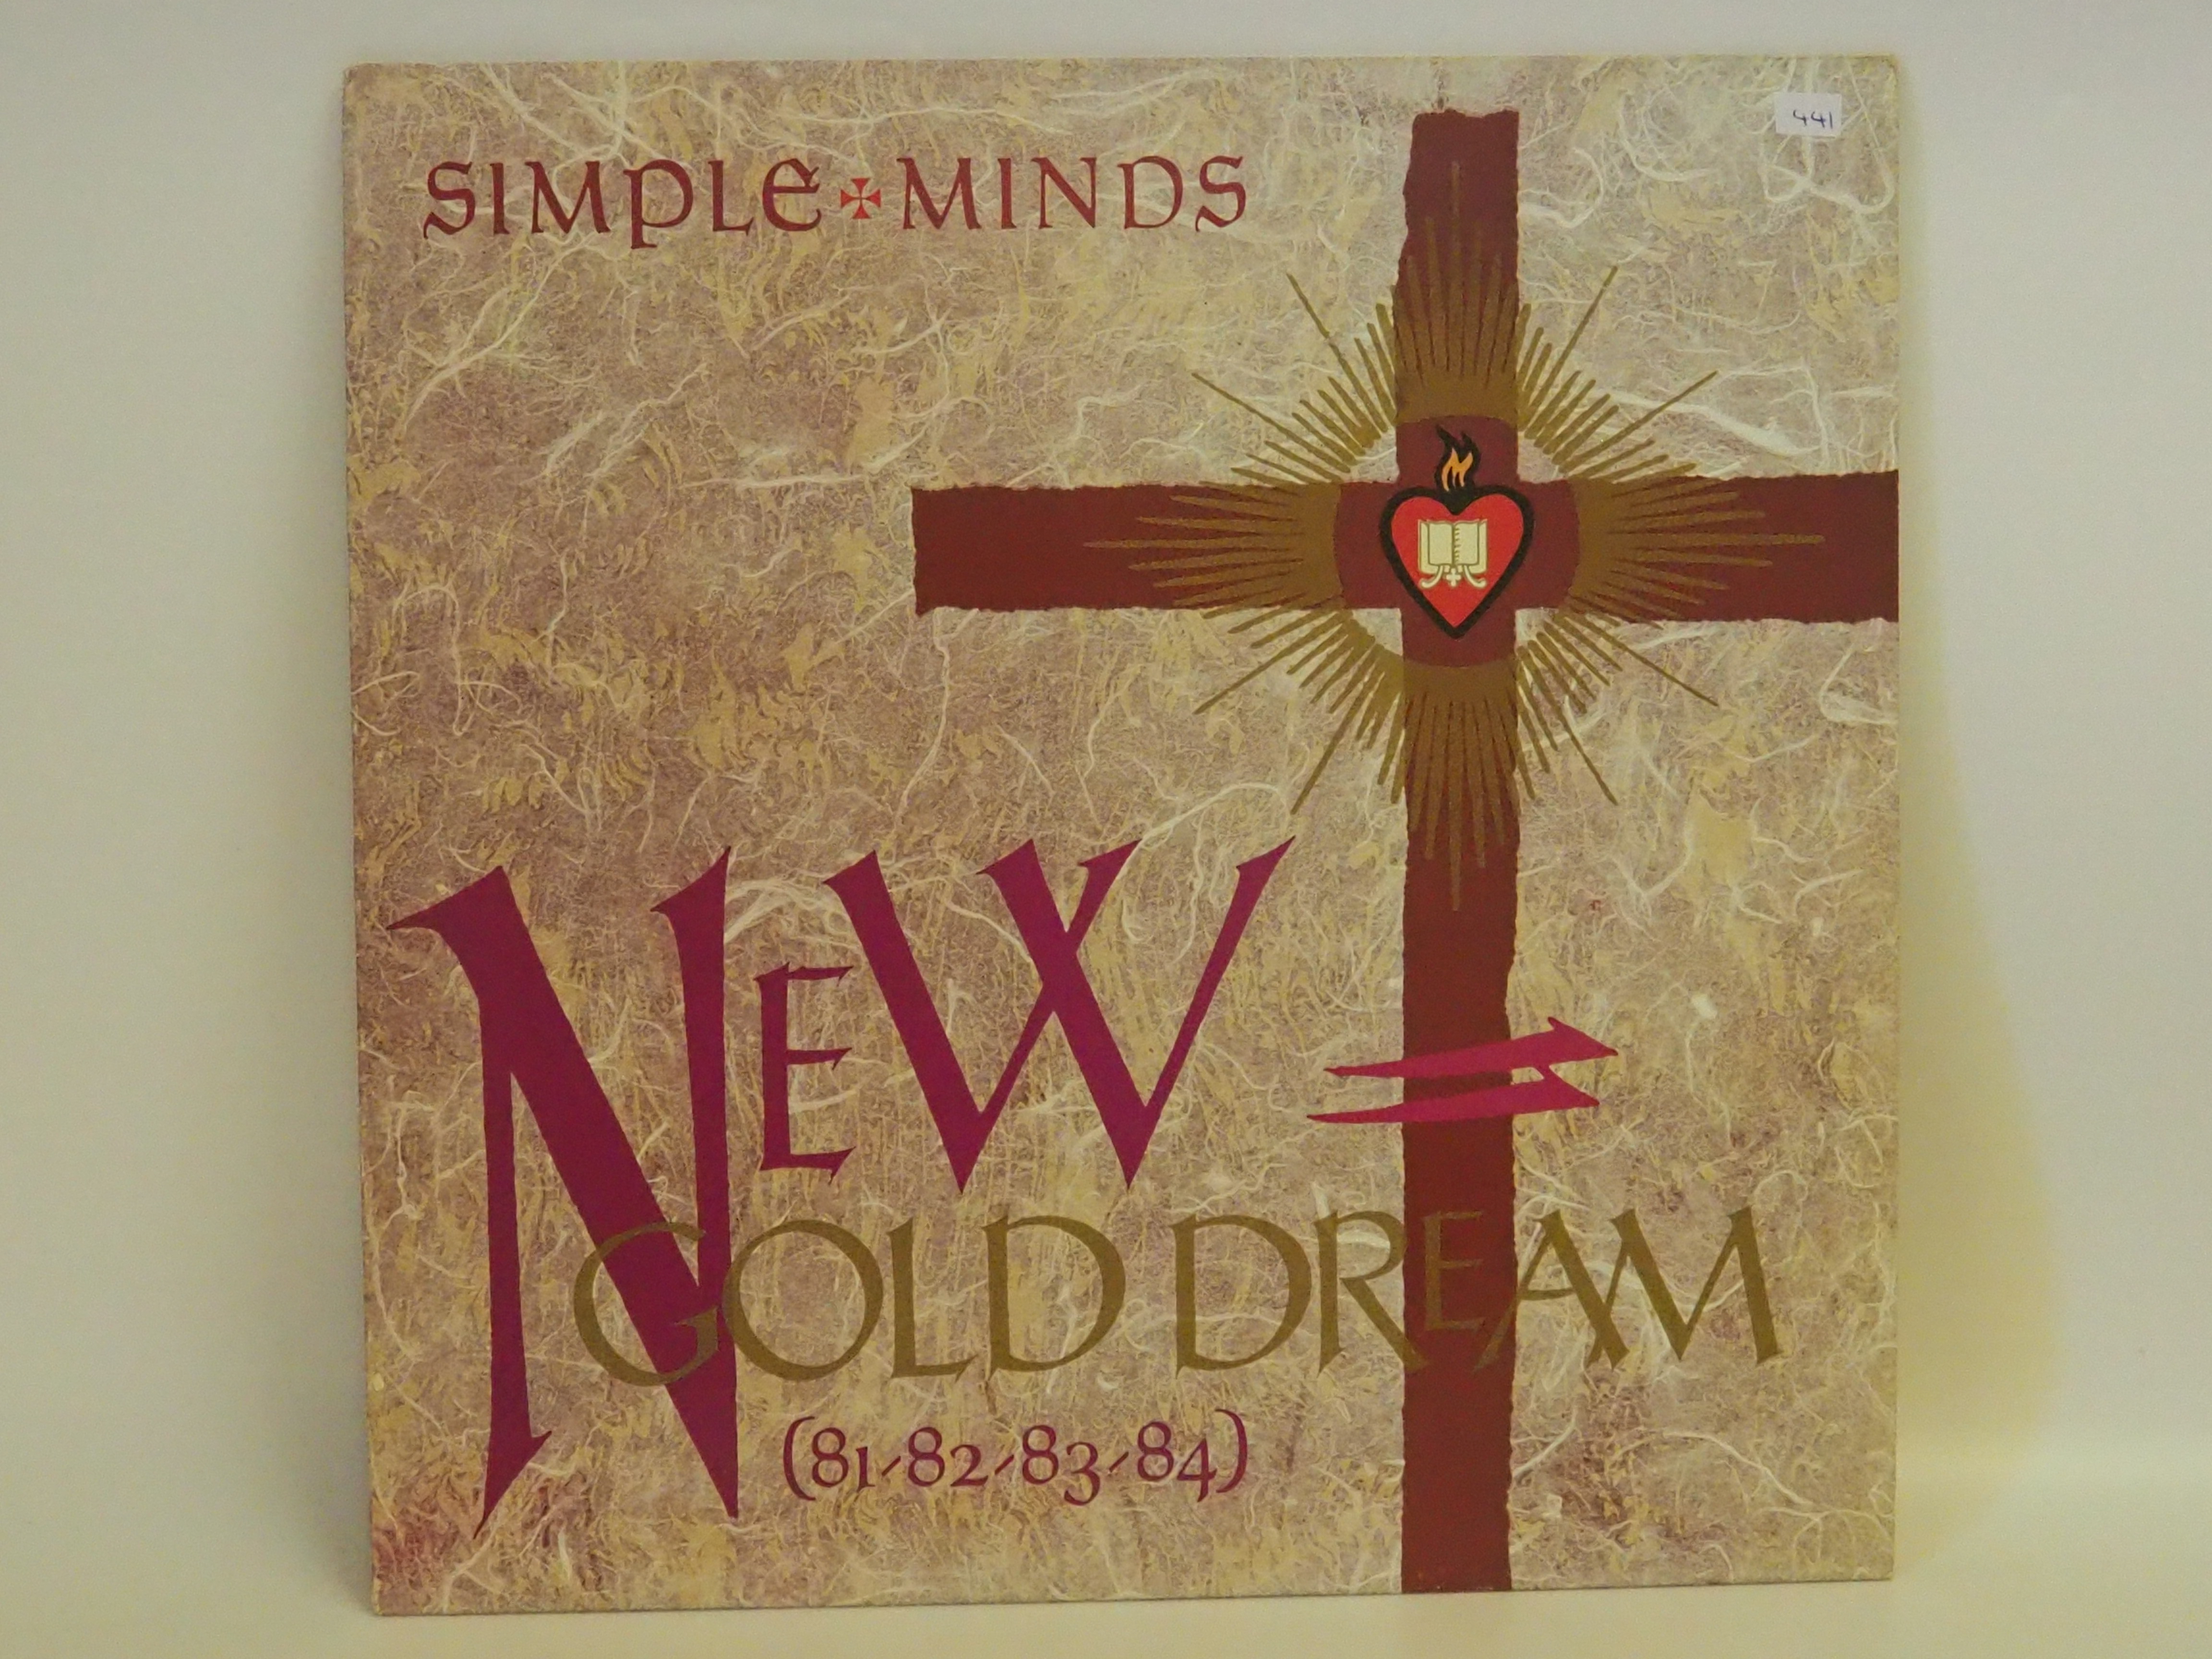 Simple Minds - New Gold Dream 12" Vinyl Album